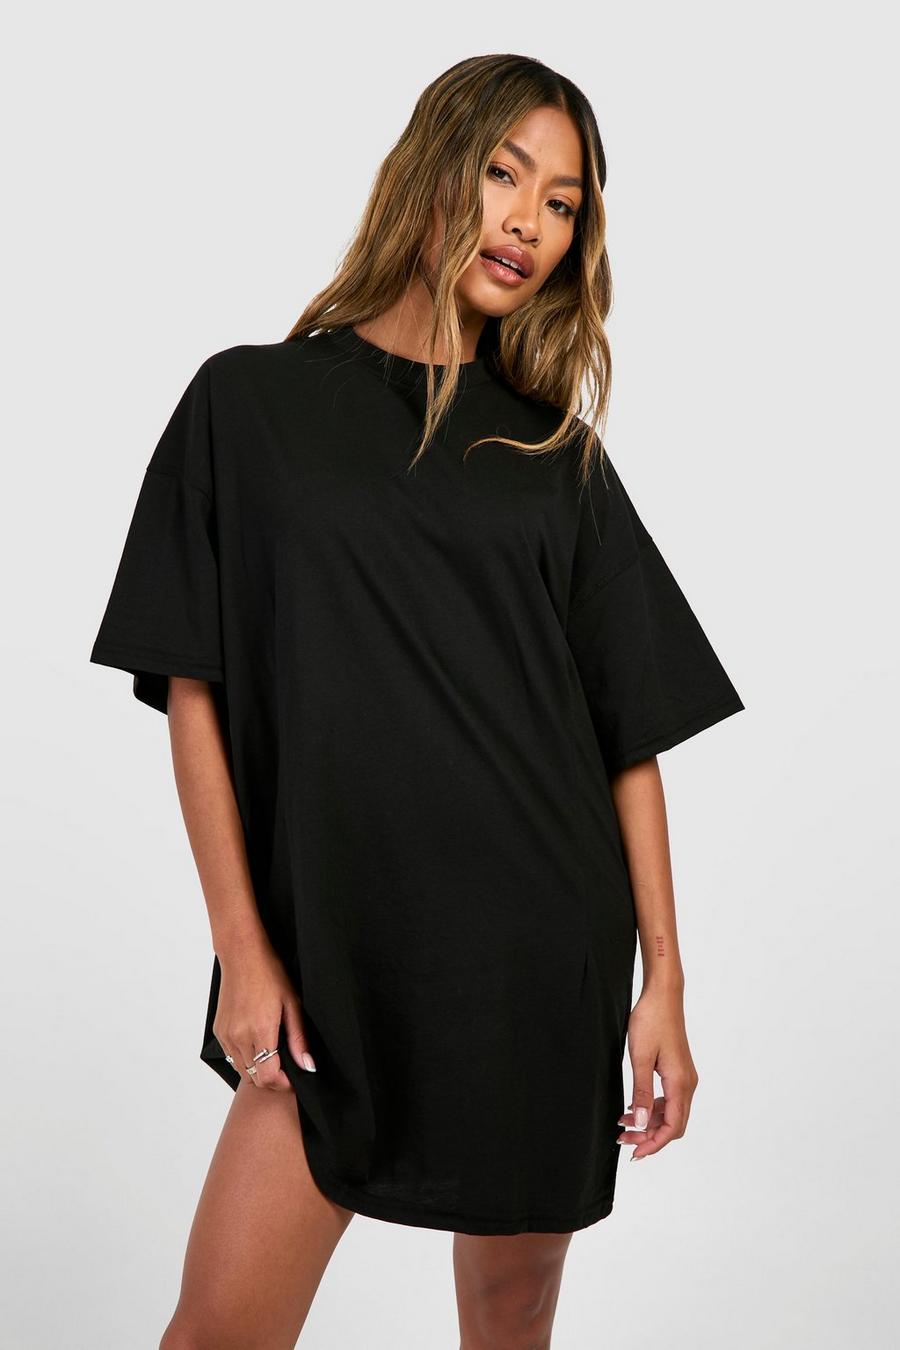 Black A-line Structured T-shirt Dress